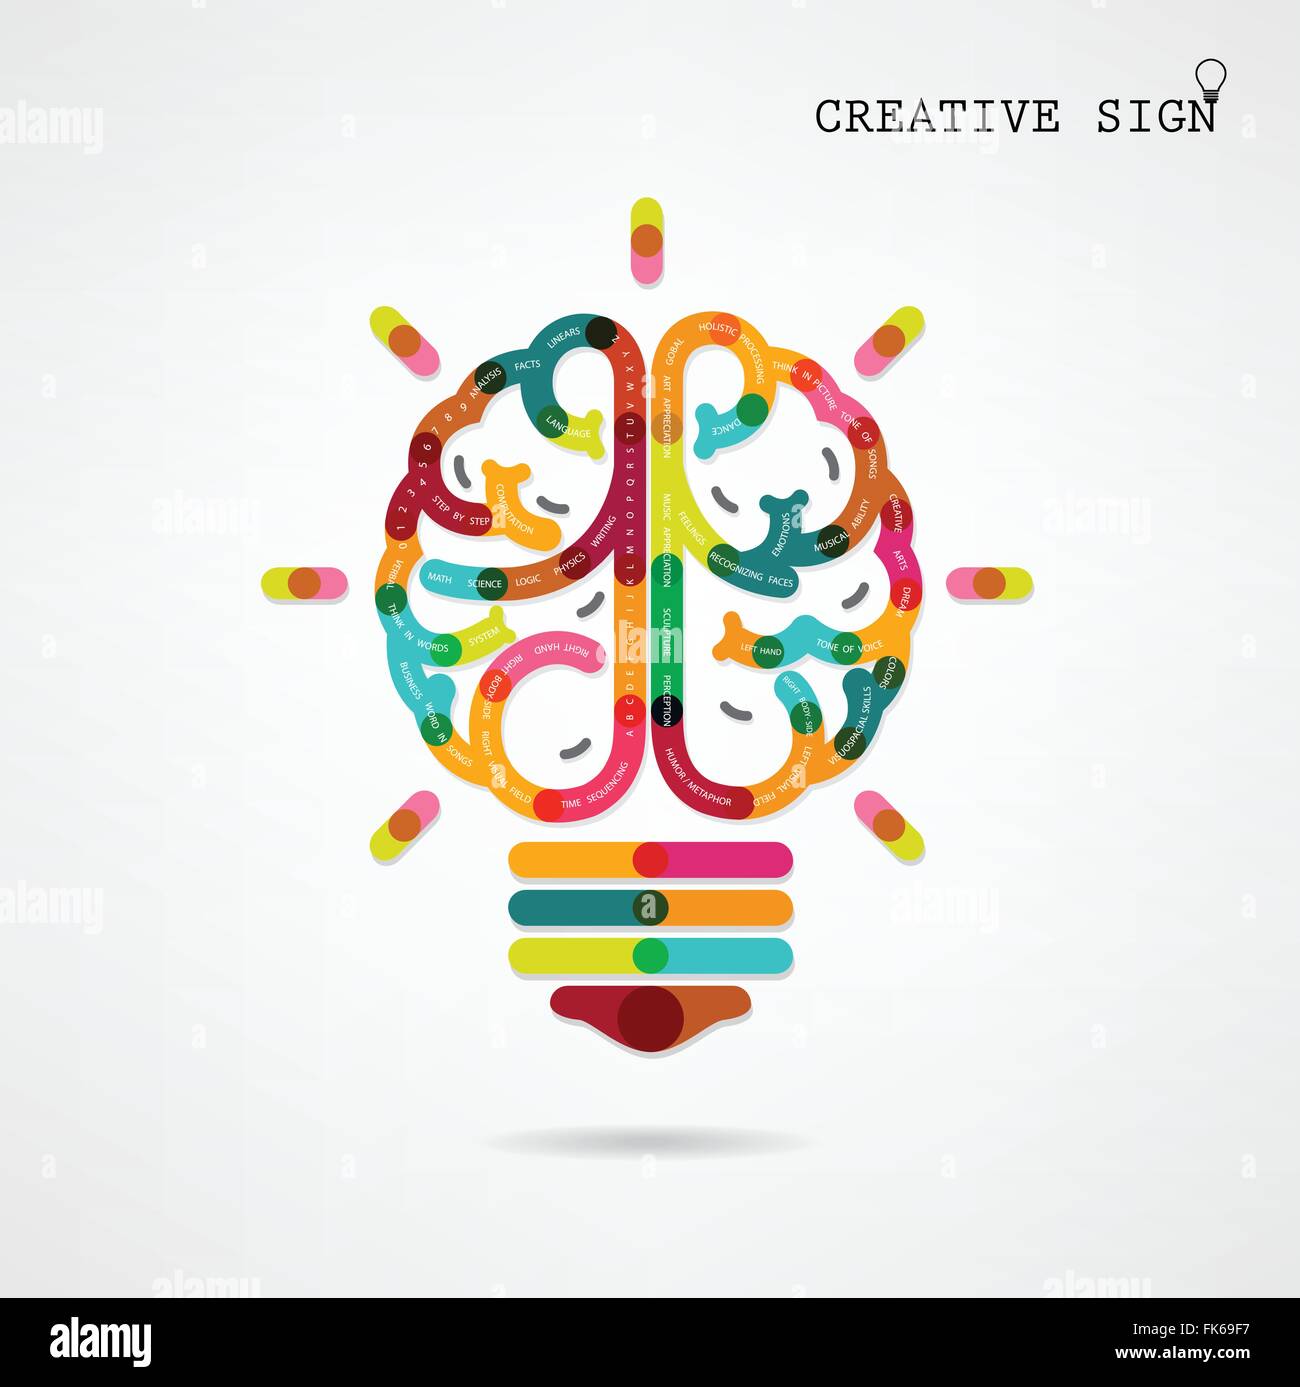 Kreative Infografiken linke und Rechte Gehirnhälfte Funktion Ideen auf Hintergrund, design für Flyer, Cover, Broschüre, Plakat, Diagramm Stock Vektor